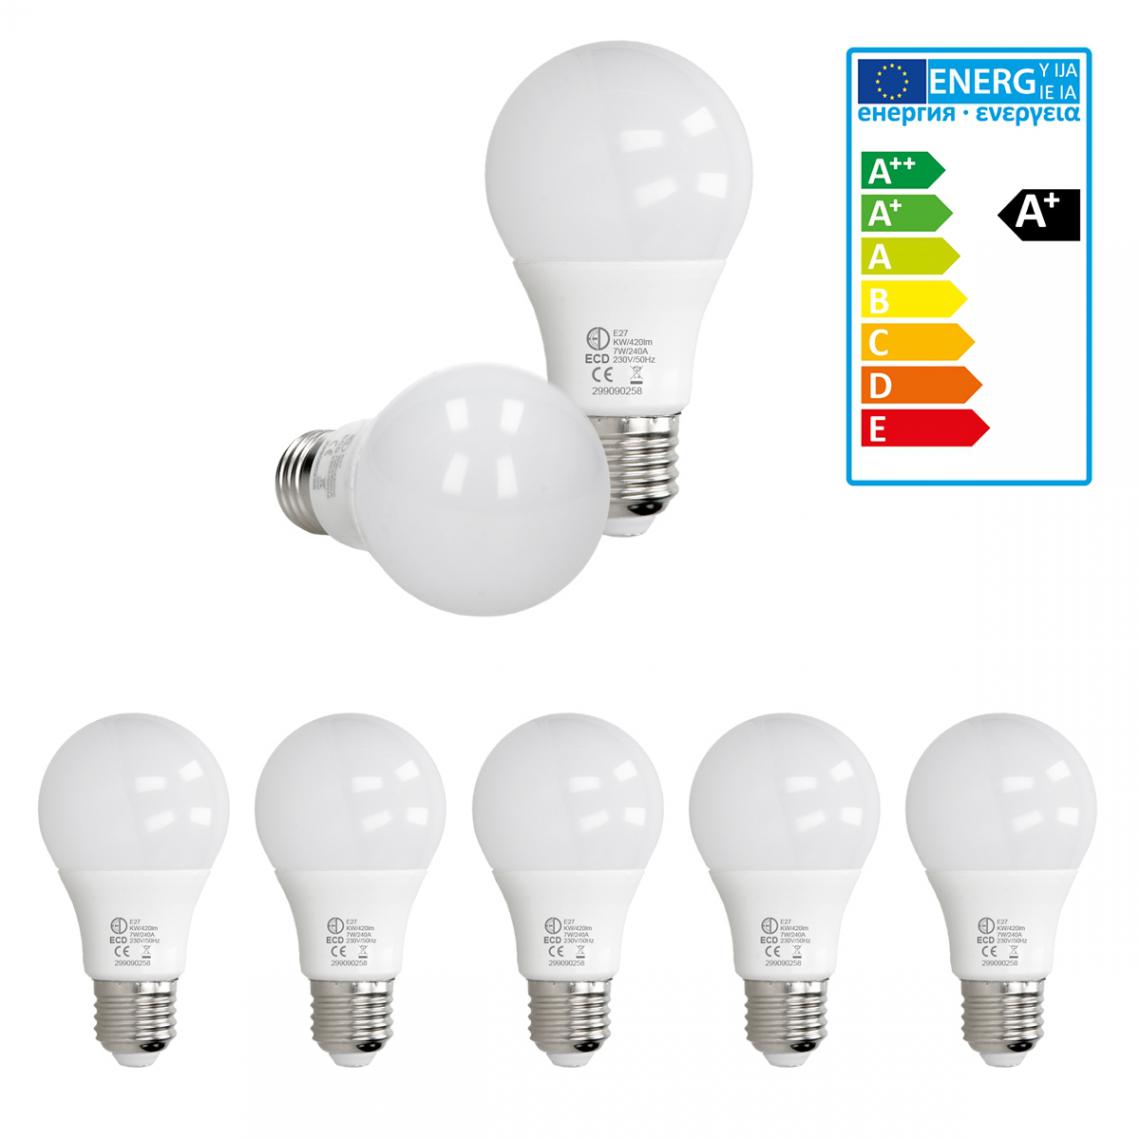 Ecd Germany - ECD Germany 5 pièces 7W E27 ampoule LED | 6000 Kelvin | Angle de faisceau 270 ° | 420 lumens | Blanc froid | 220-240 v | EEK A + | Ampoule d'éclairage - Ampoules LED